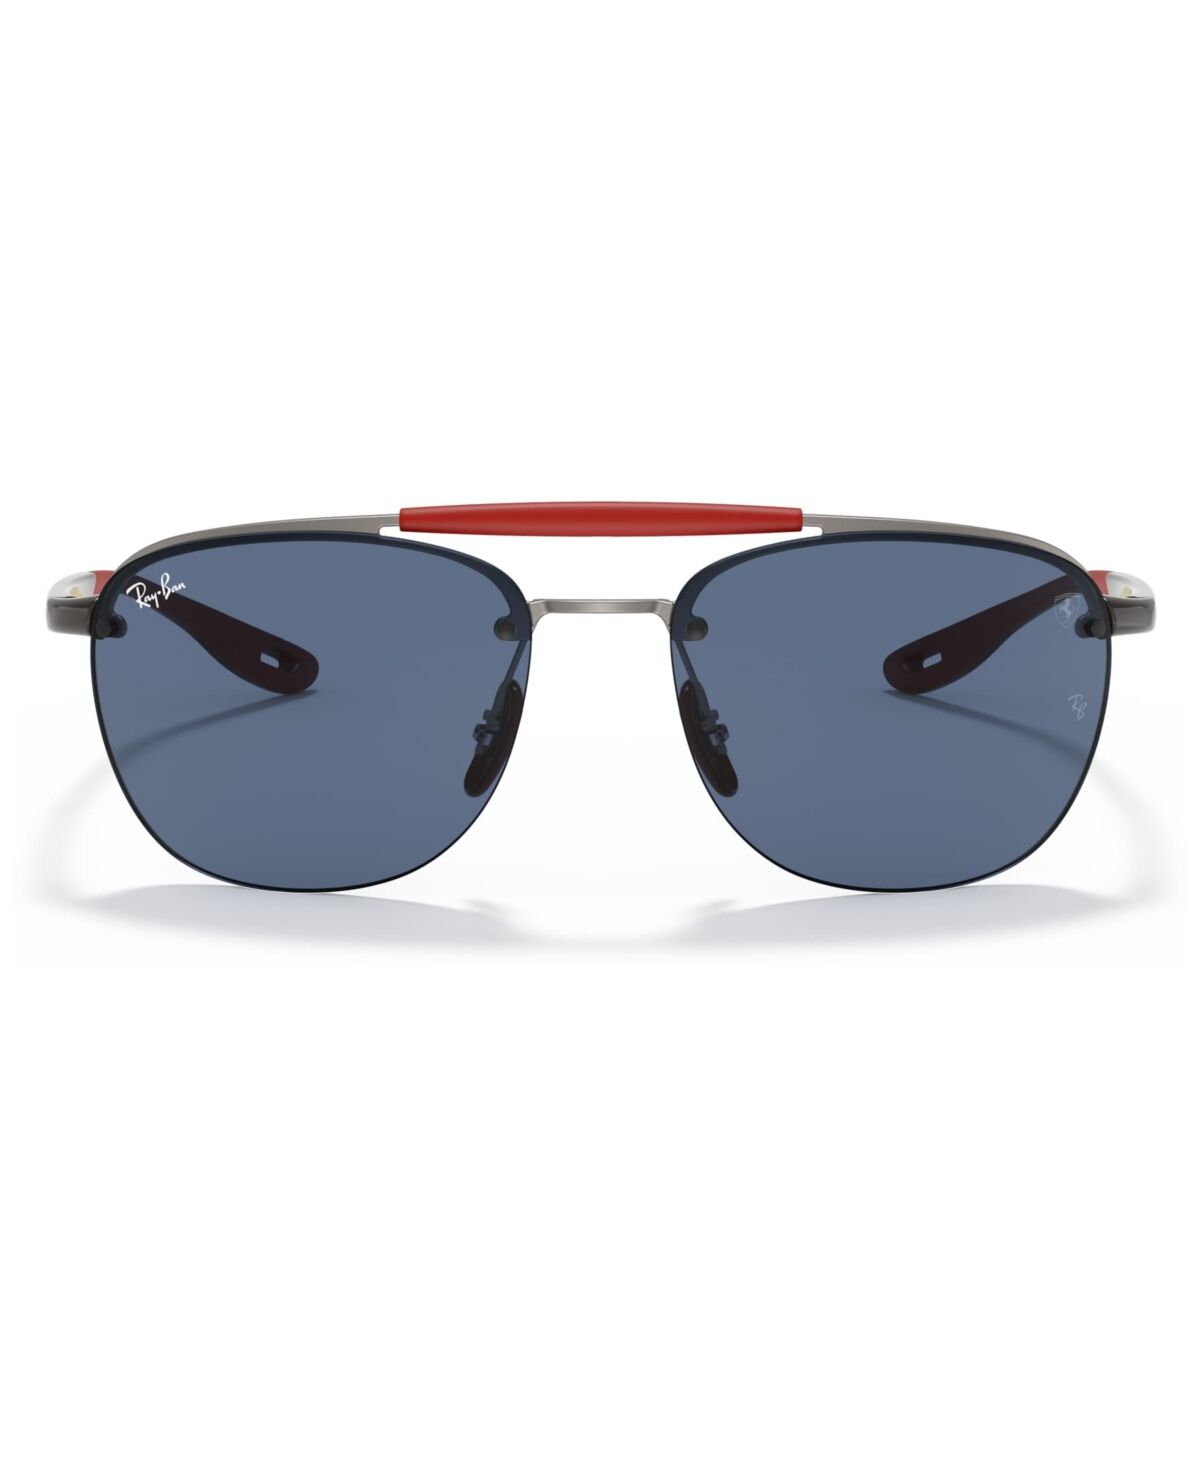 Ray-Ban Men's Sunglasses, RB3662M Scuderia Ferrari Collection 59 - MATTE GUNMETAL/DARK BLUE